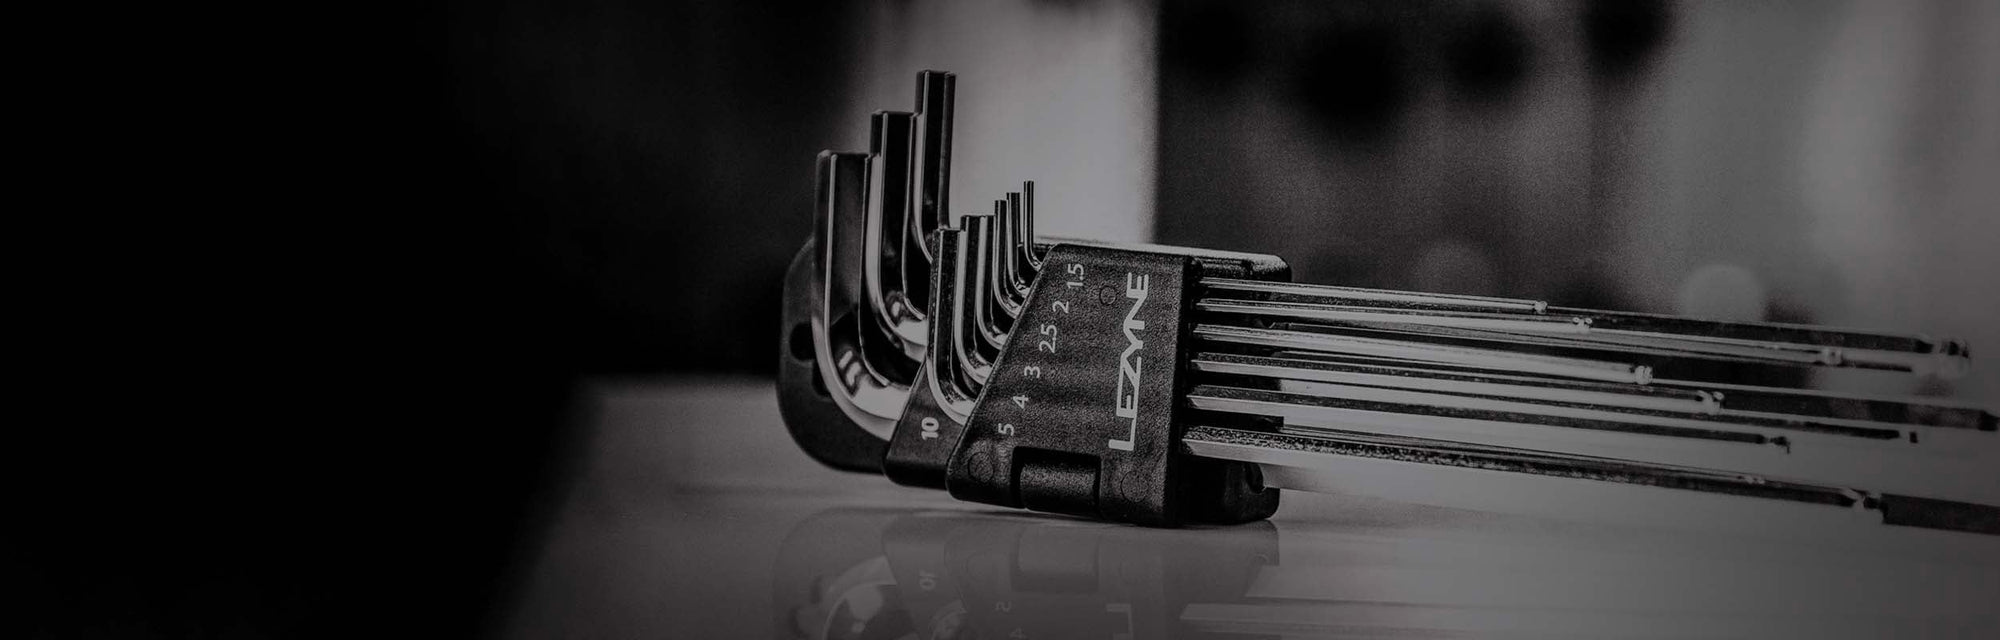 A close up of a set of allen keys.